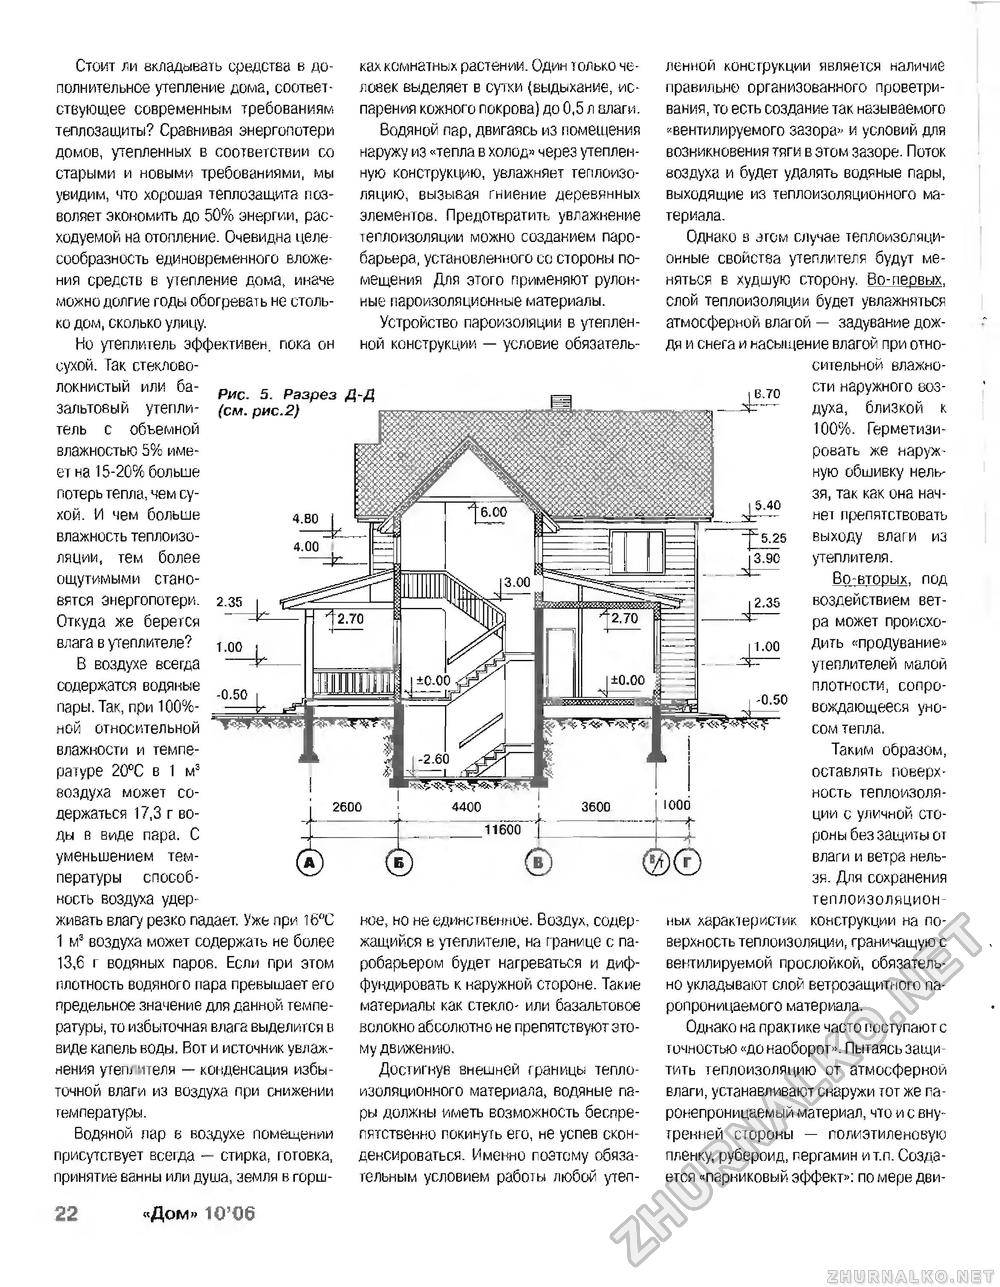 Дом 2006-10, страница 22